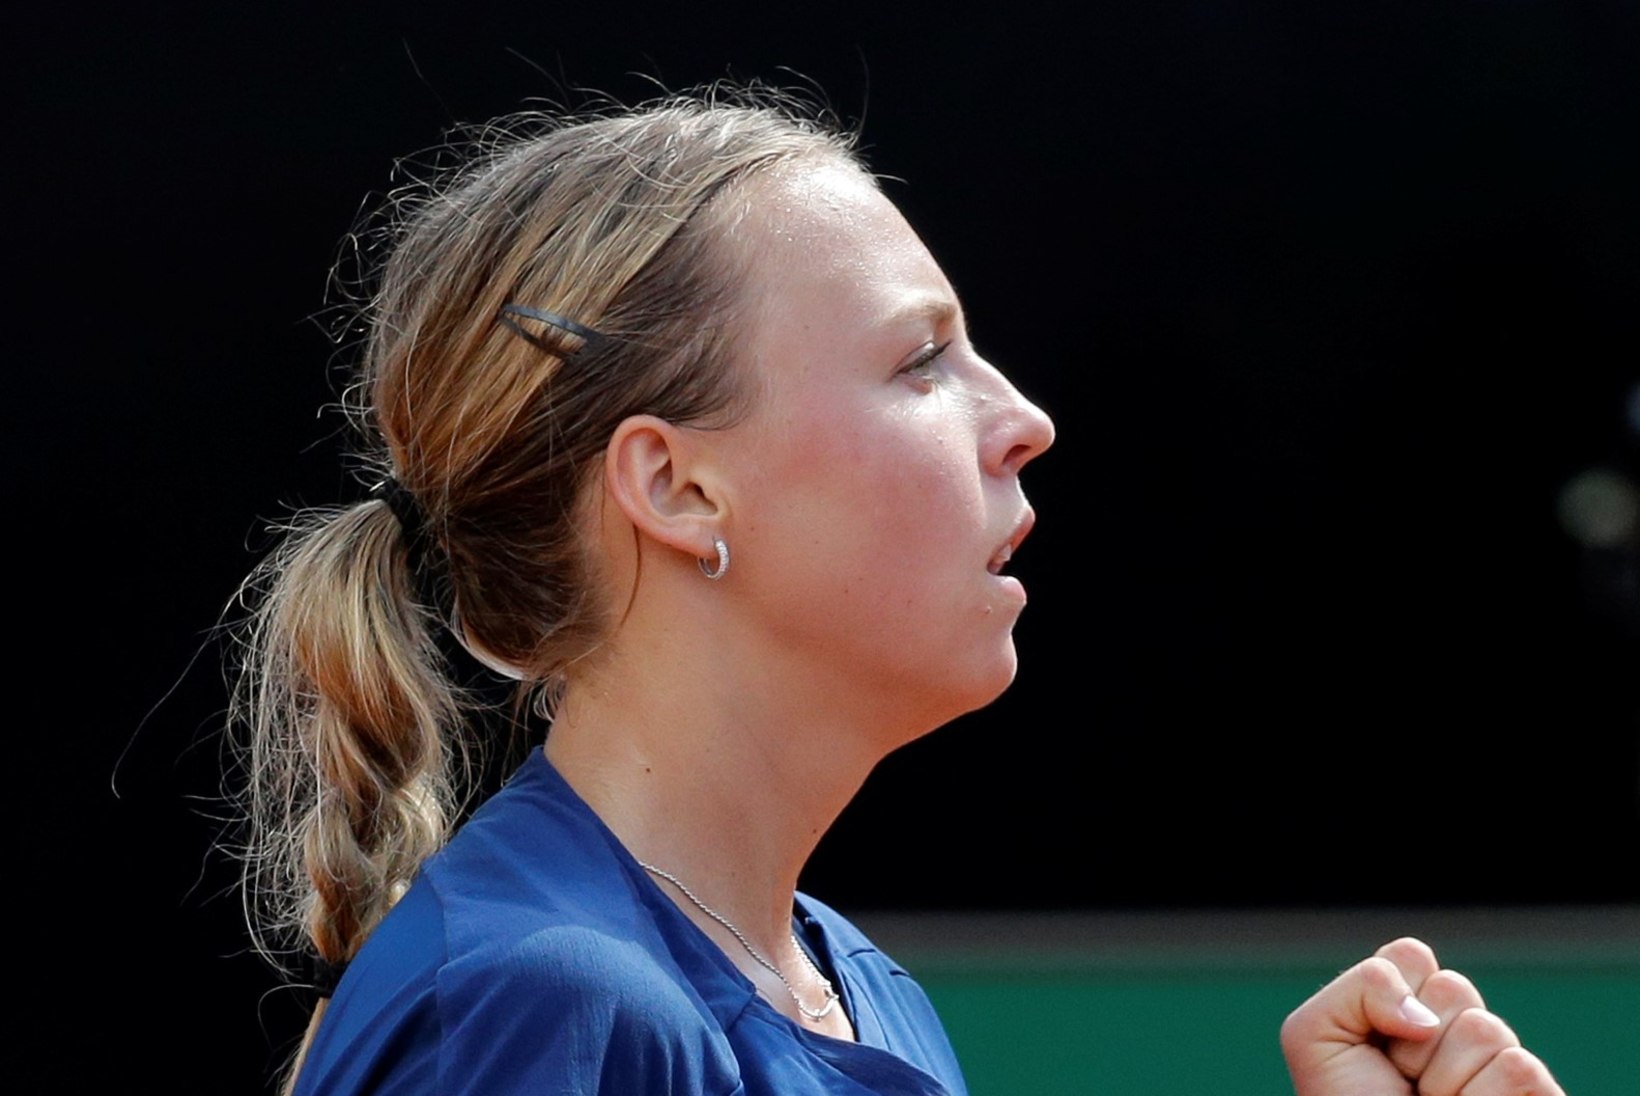 Mida räägivad välismaa väljaanded Anett Kontaveitist? "Ta on Rooma turniiri uus nägu", "WTA uus sensatsioon", "Millal ta kaotab?"